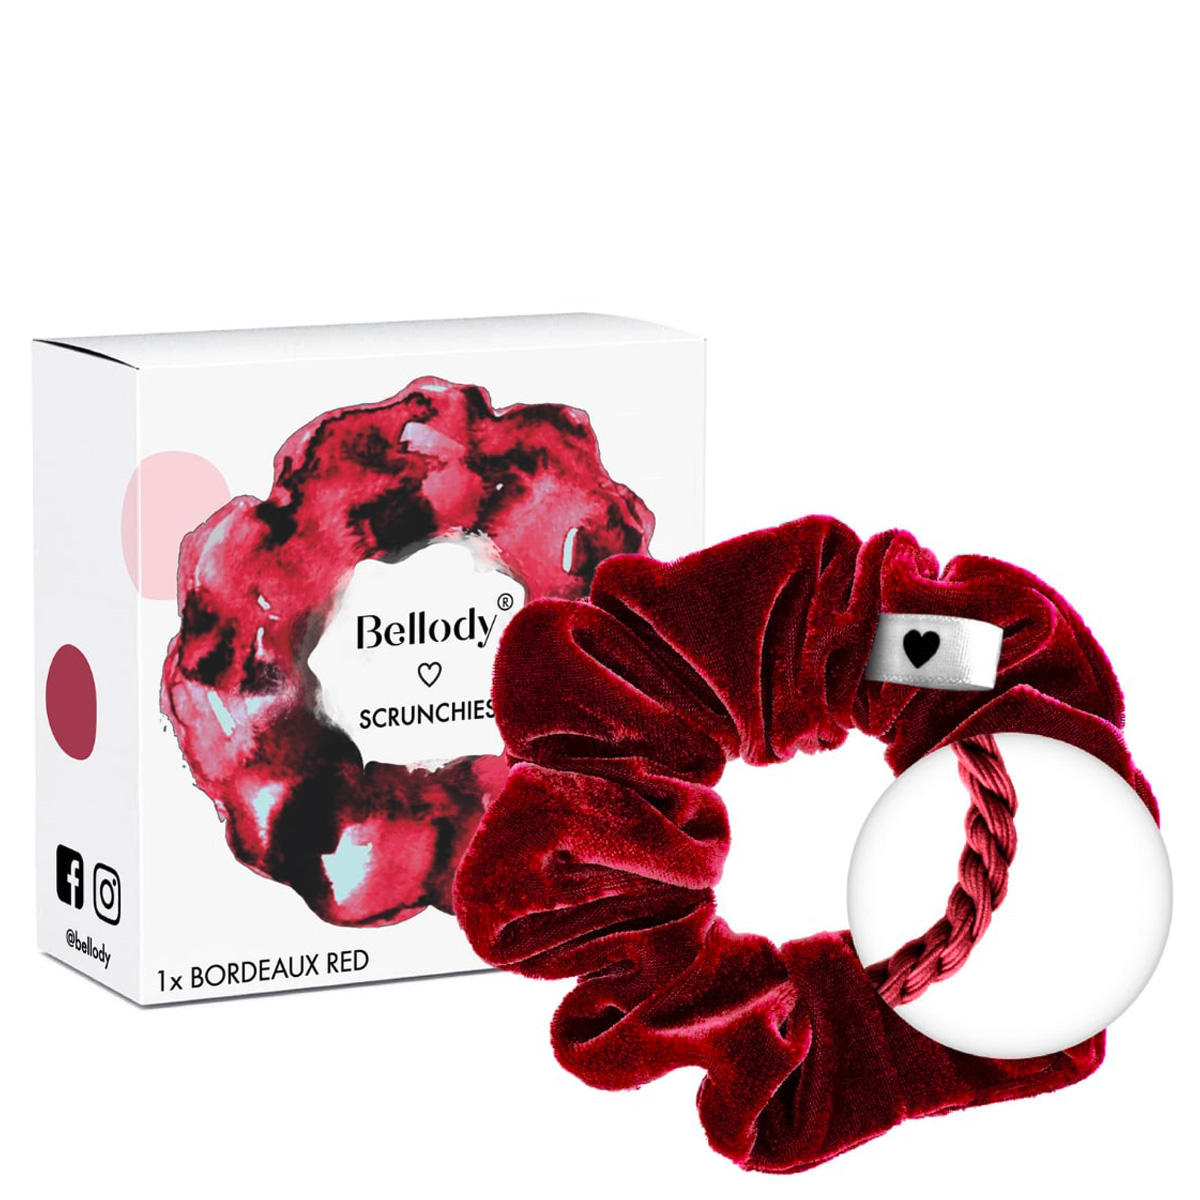 Bellody Original Scrunchies Bordeaux Red 1 Stück - 2